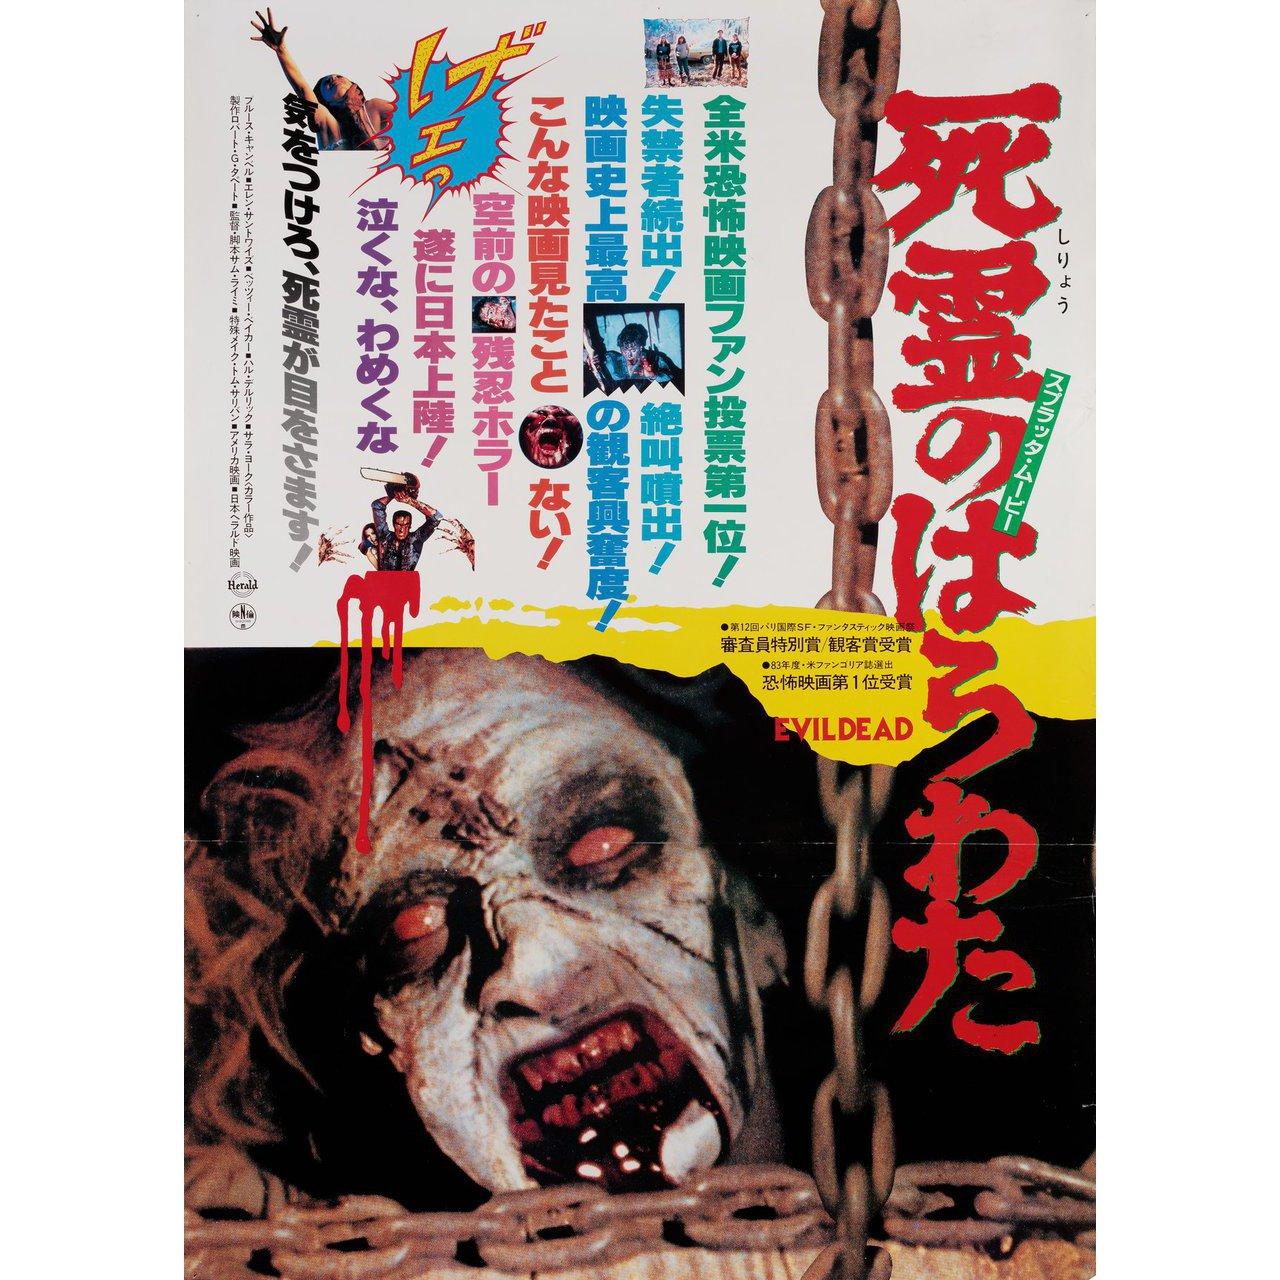 Affiche originale japonaise B2 de 1984 pour le film The Evil Dead réalisé par Sam Raimi en 1981 avec Bruce Campbell / Ellen Sandweiss / Richard DeManincor / Betsy Baker. Très bon état, roulé. Veuillez noter que la taille est indiquée en pouces et